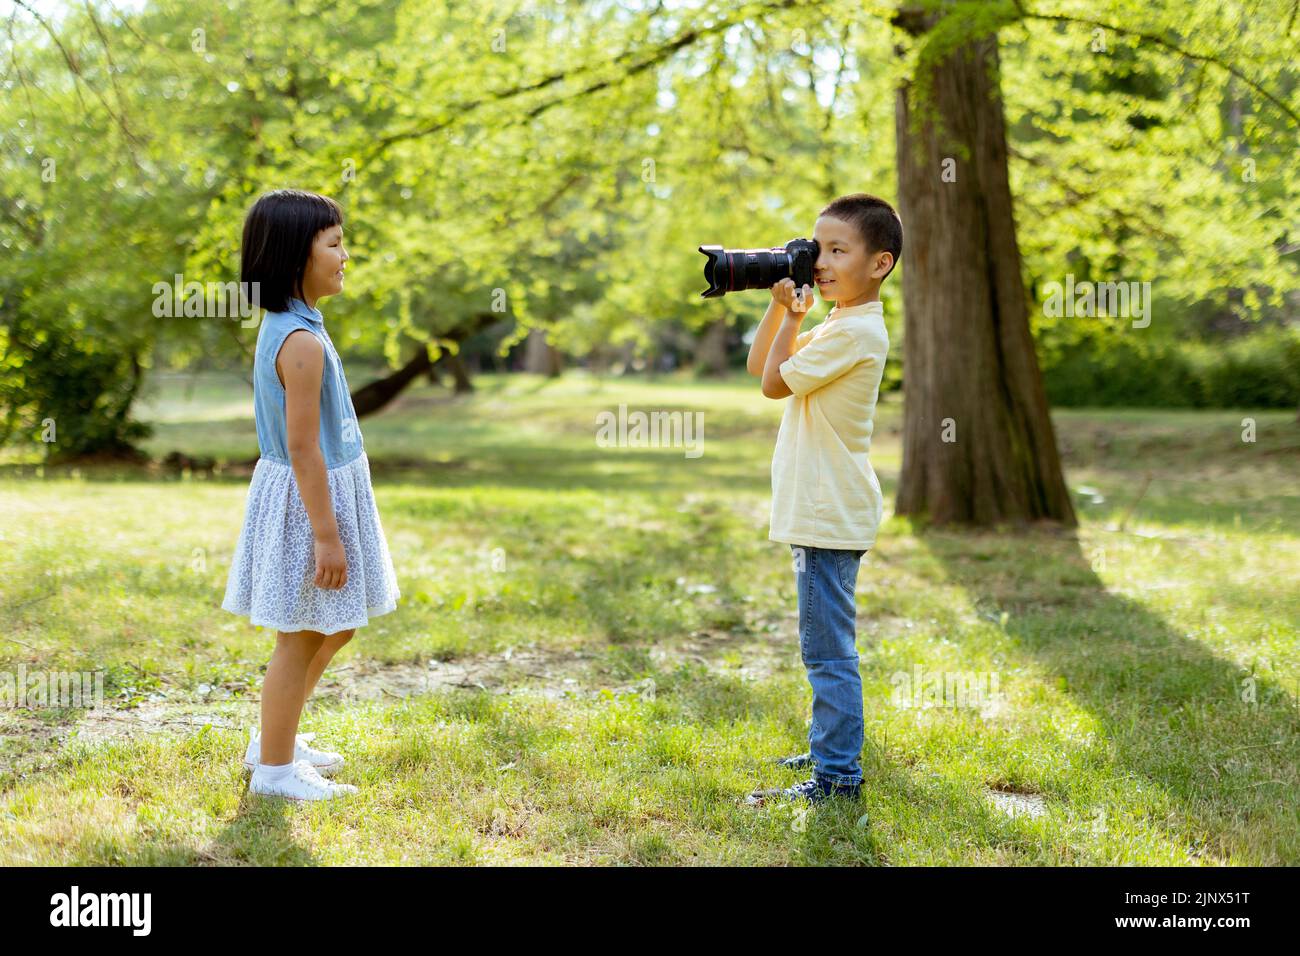 Lindo niño asiático actuando como un fotógrafo profesional mientras toma fotos de su hermana pequeña Foto de stock